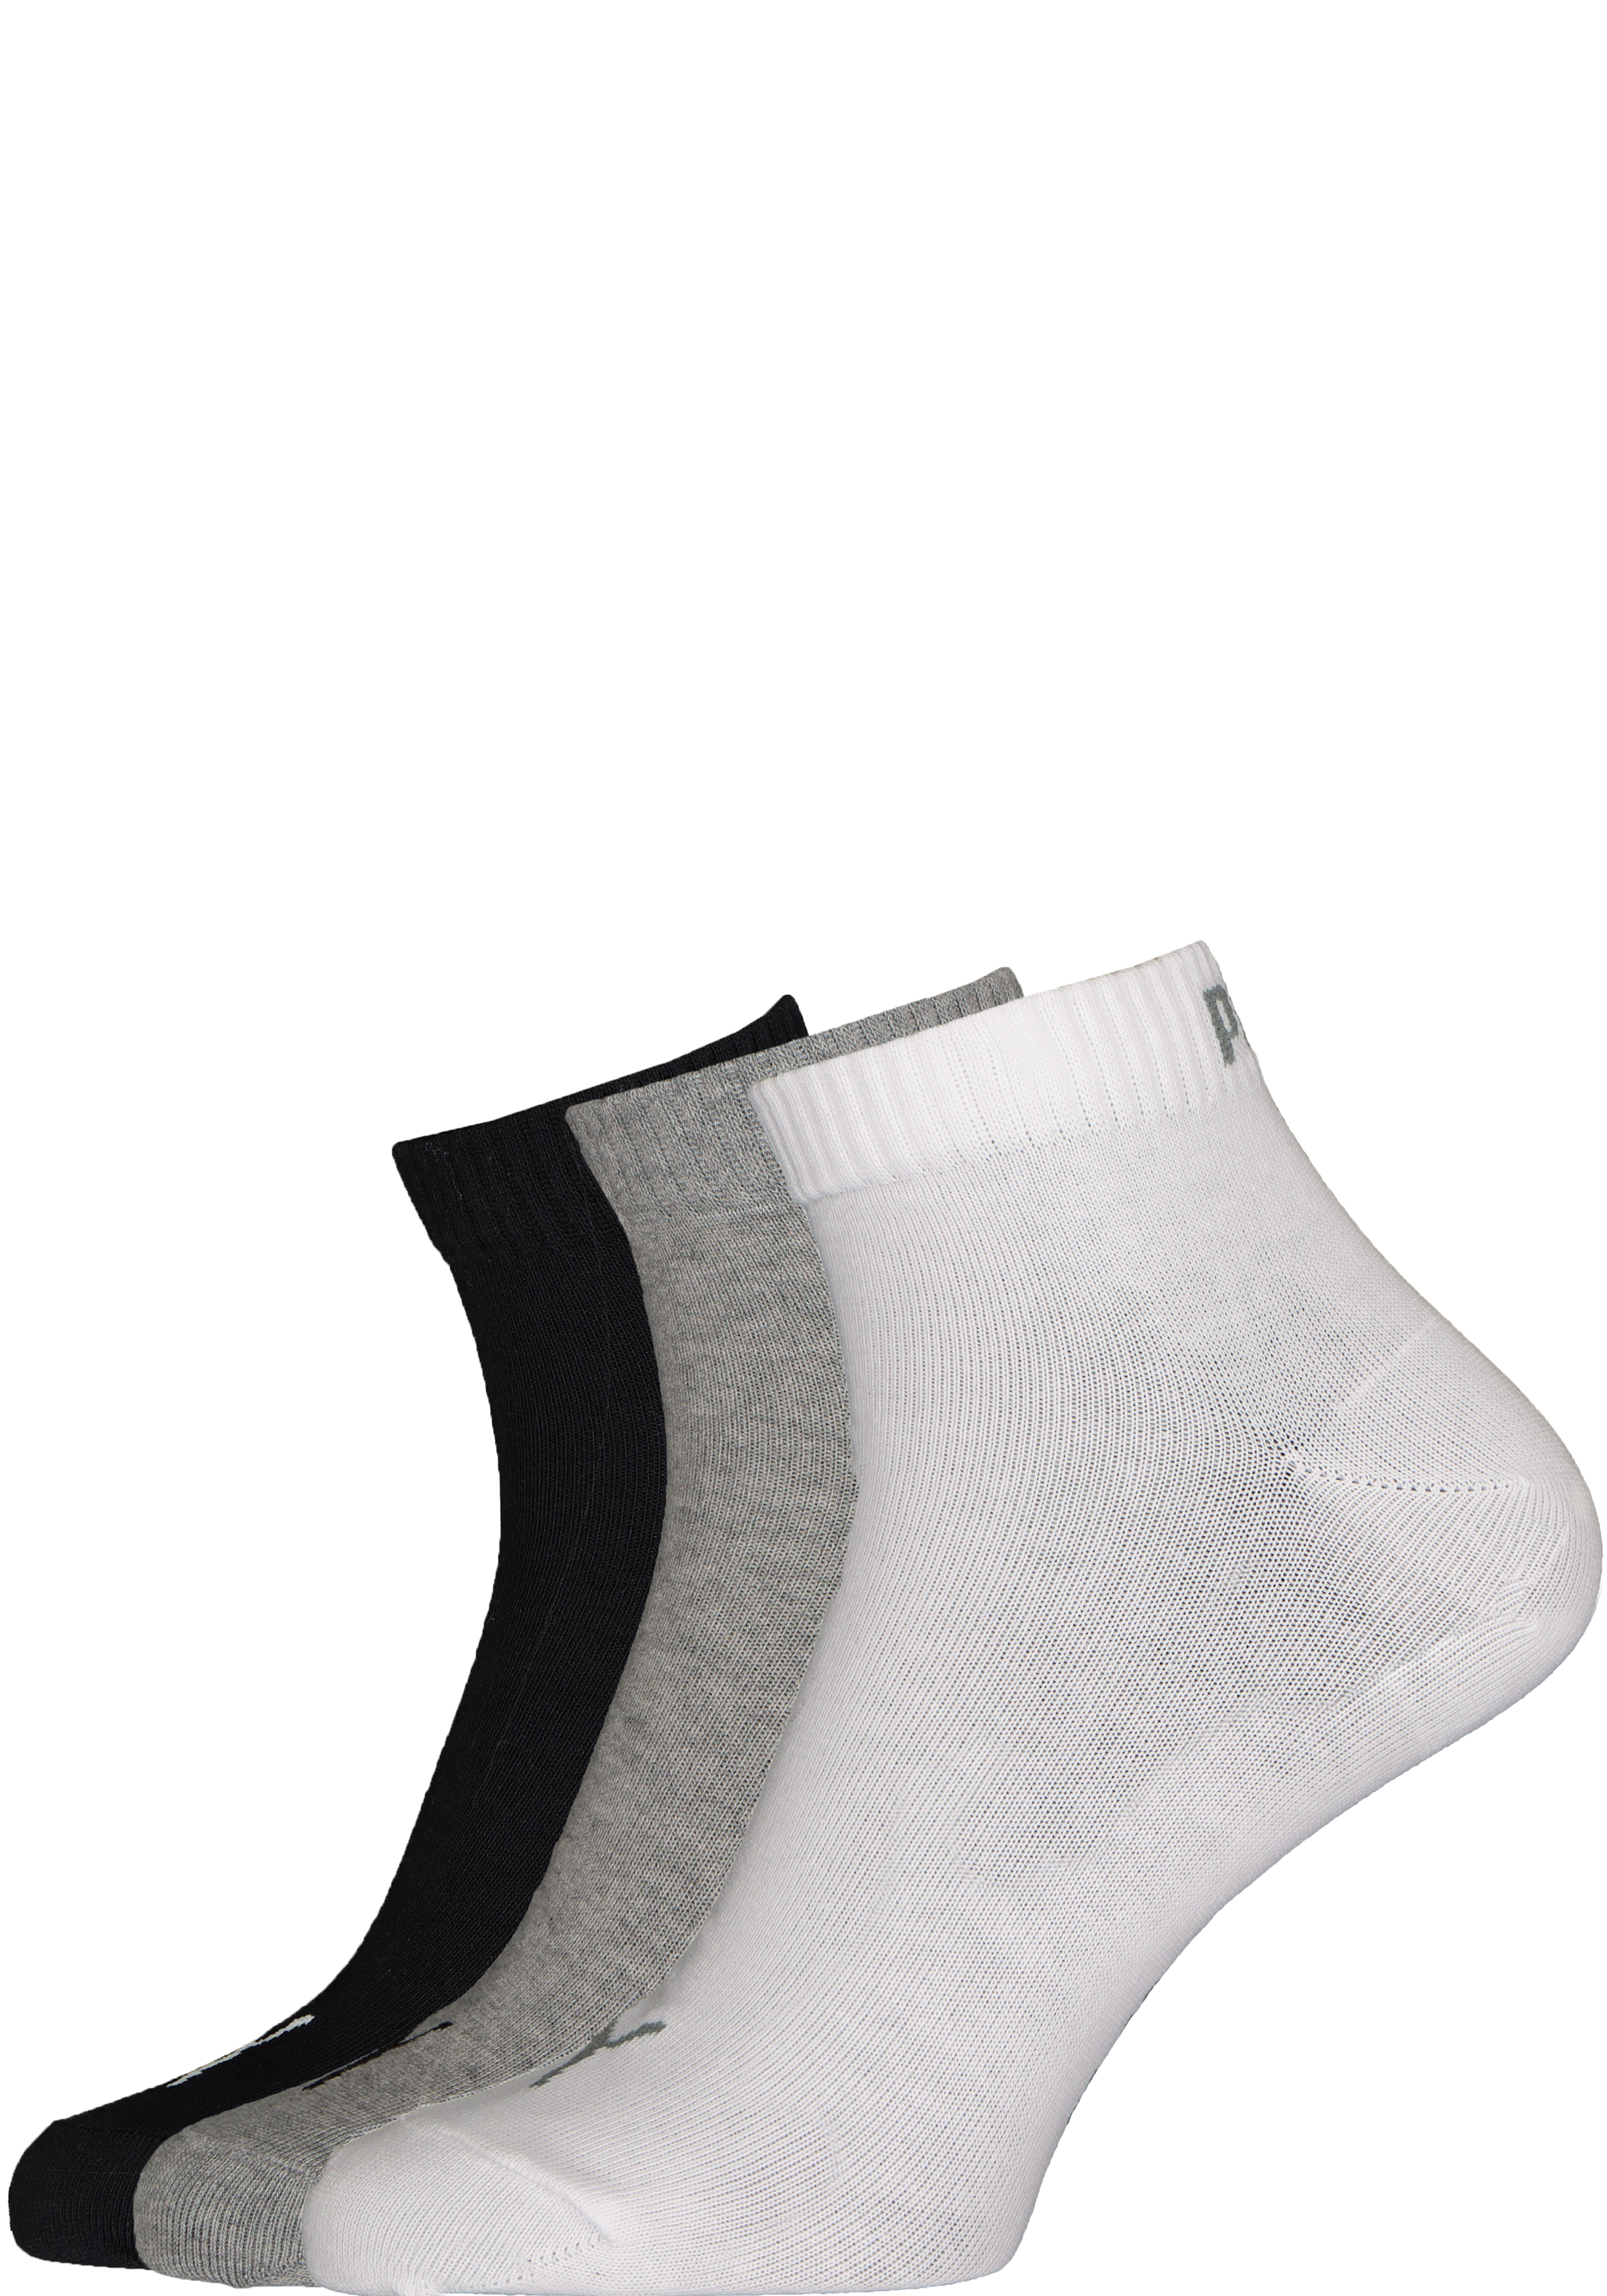 Voorwaarde Afwijzen eetlust Puma unisex sneaker sokken (6-pack), wit, grijs en zwart - SALE tot 50%  korting